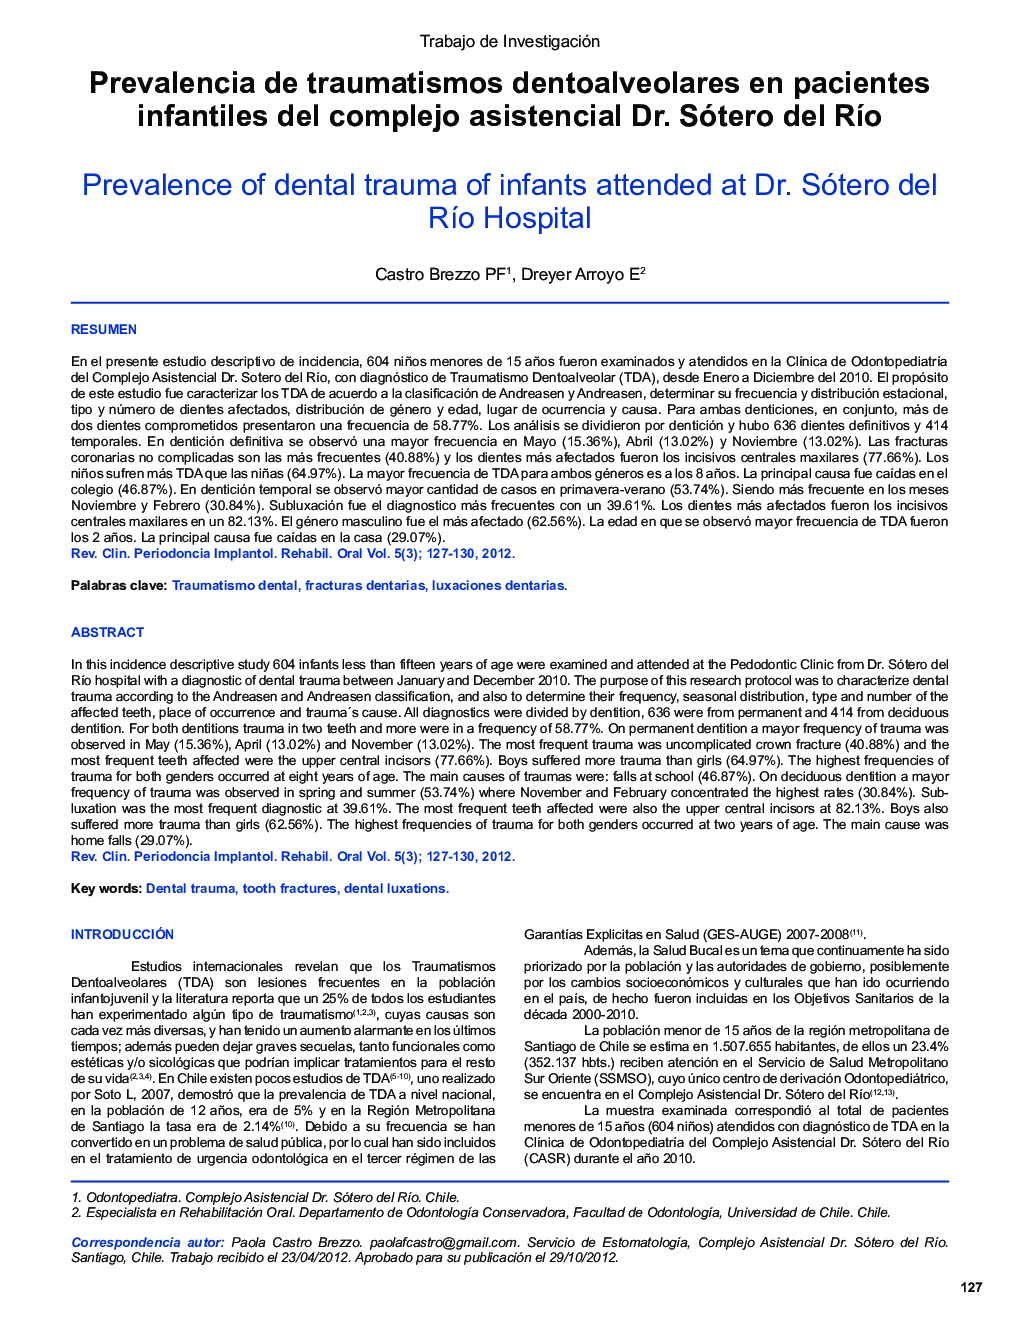 Prevalencia de traumatismos dentoalveolares en pacientes infantiles del complejo asistencial Dr. Sótero del Río